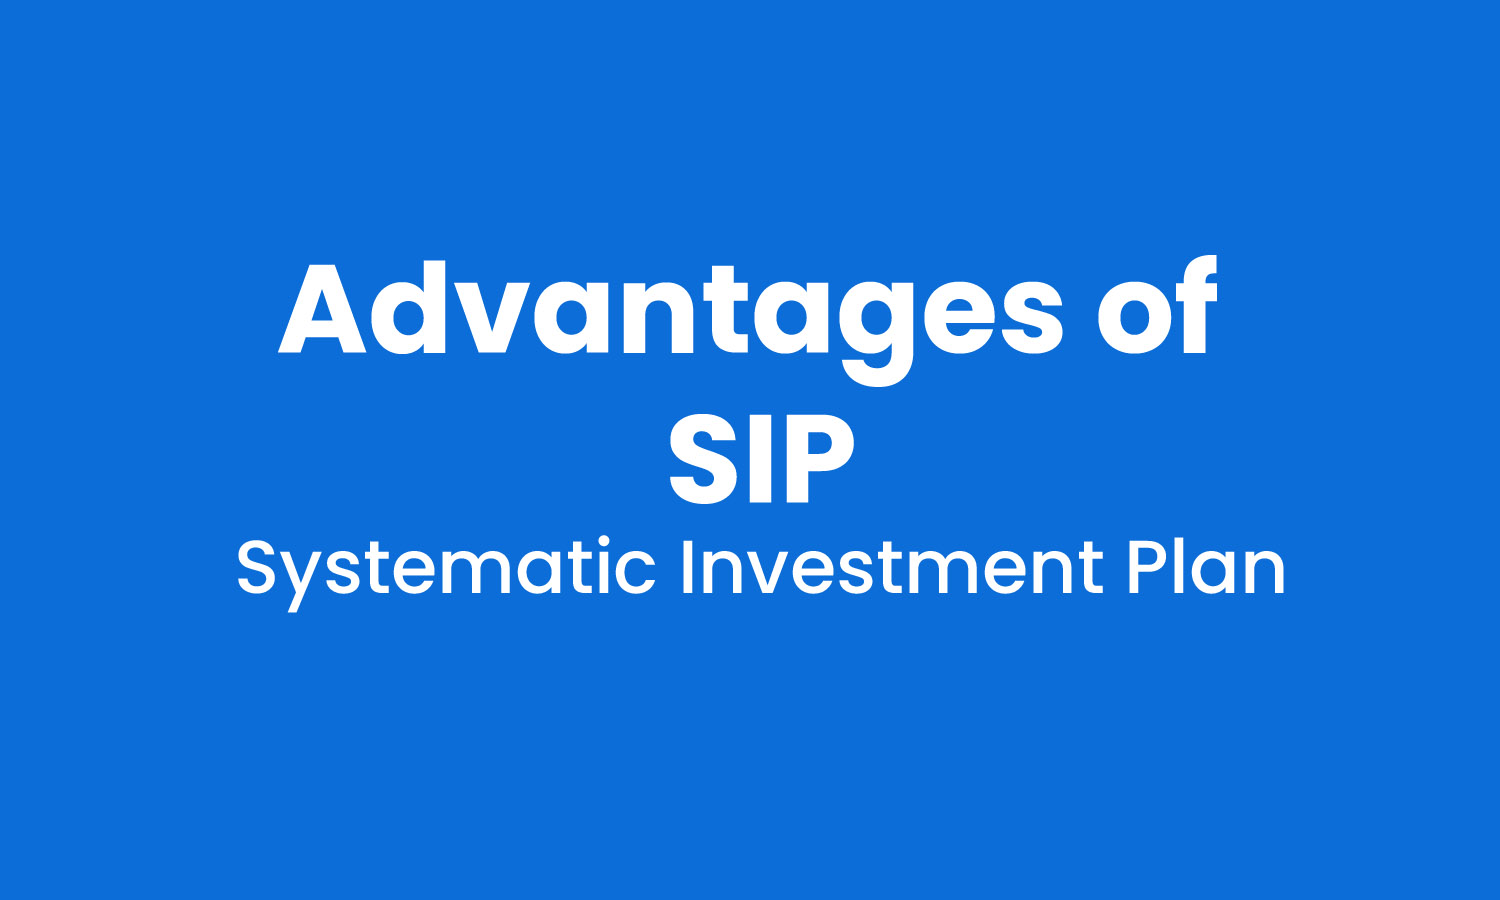 Advantages of SIP